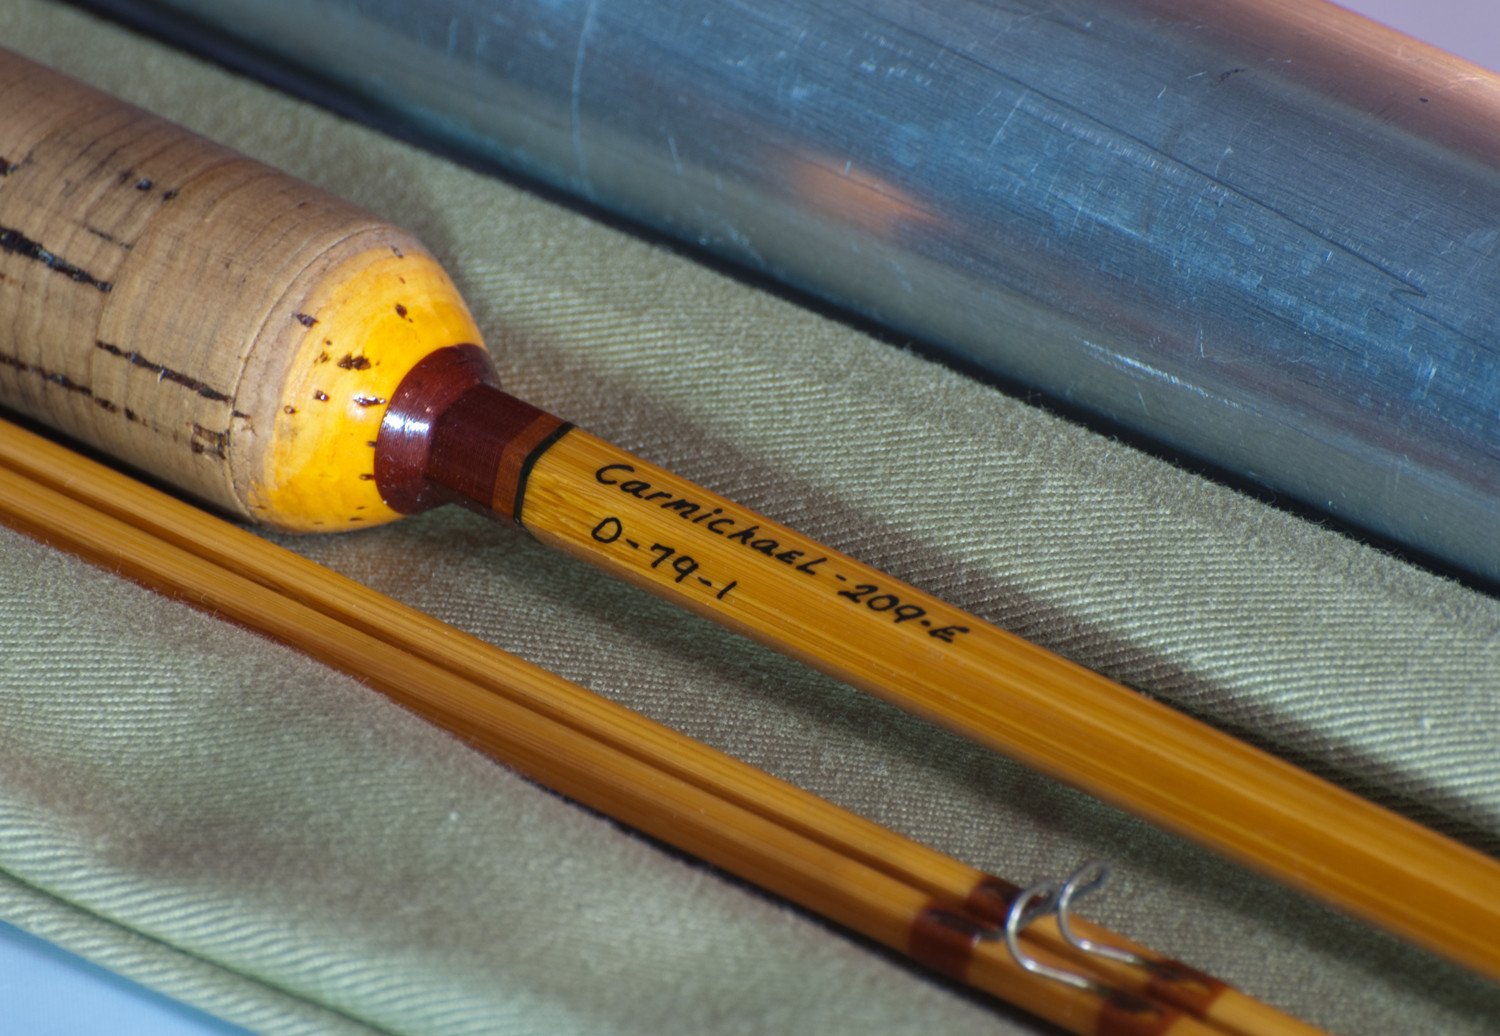 Carmichael, Hoagy -- Garrison 209E Bamboo Rod 